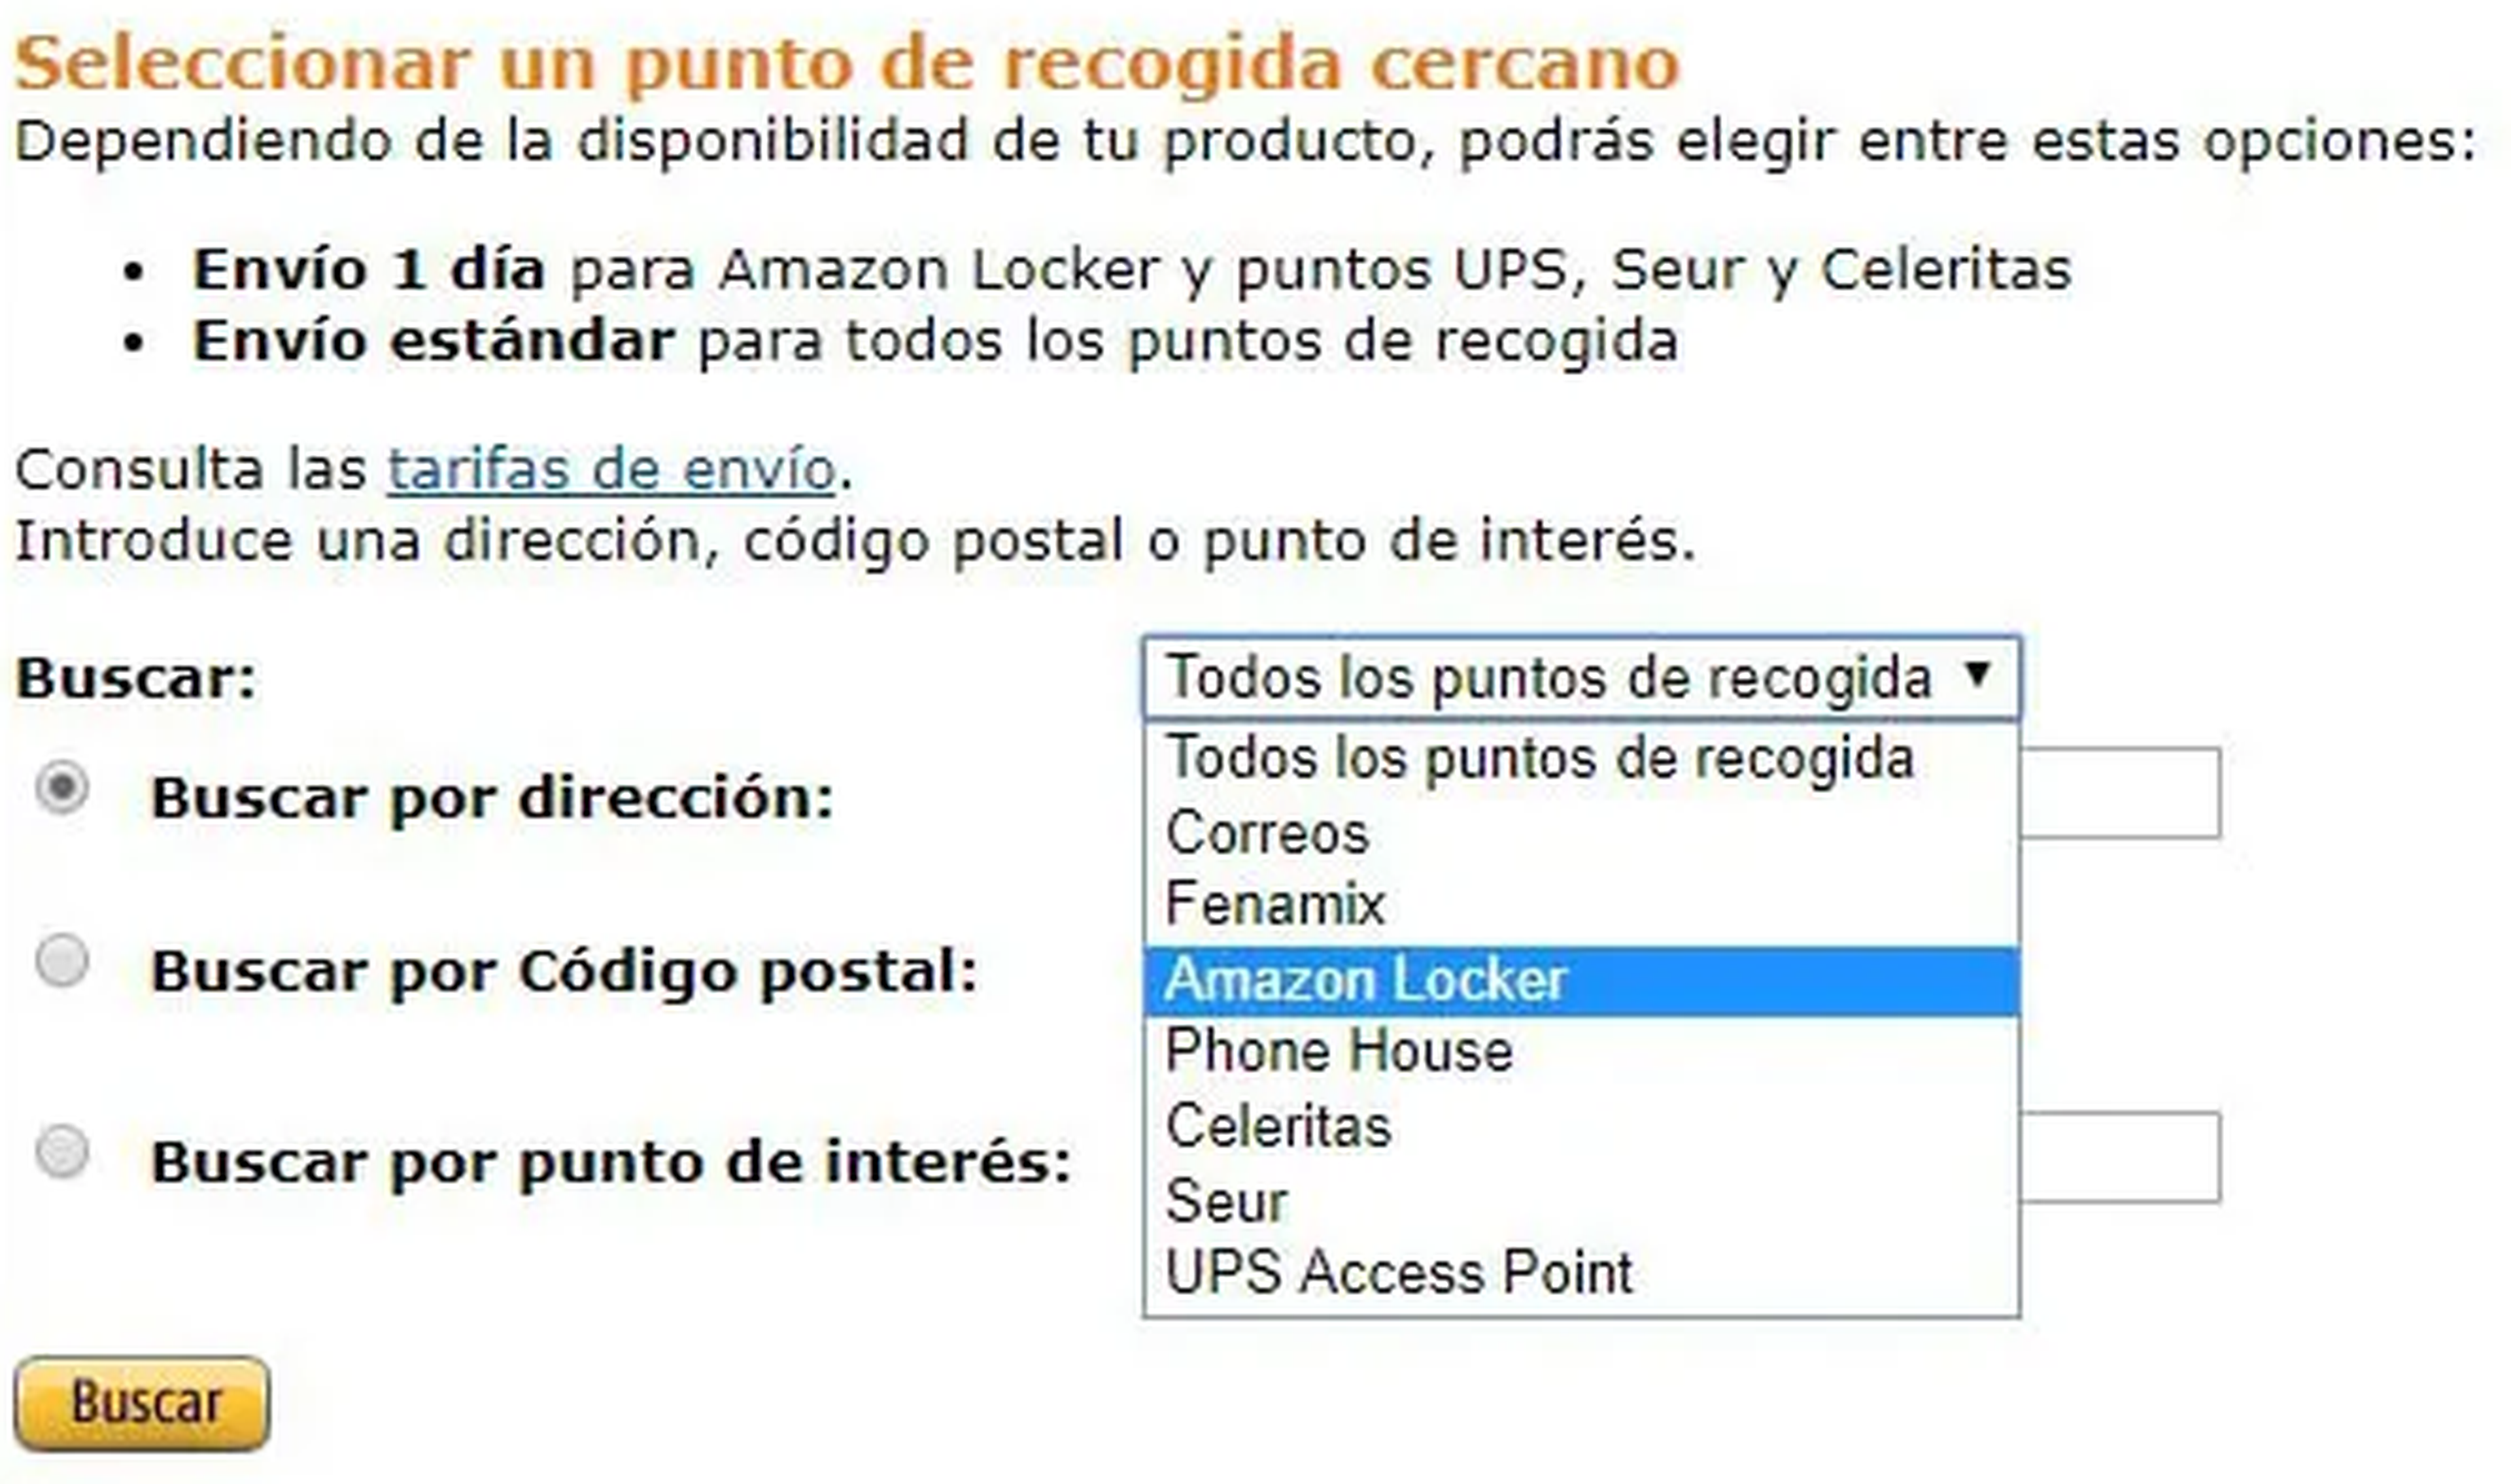 Cómo pedir y gestionar el envío a Amazon Locker